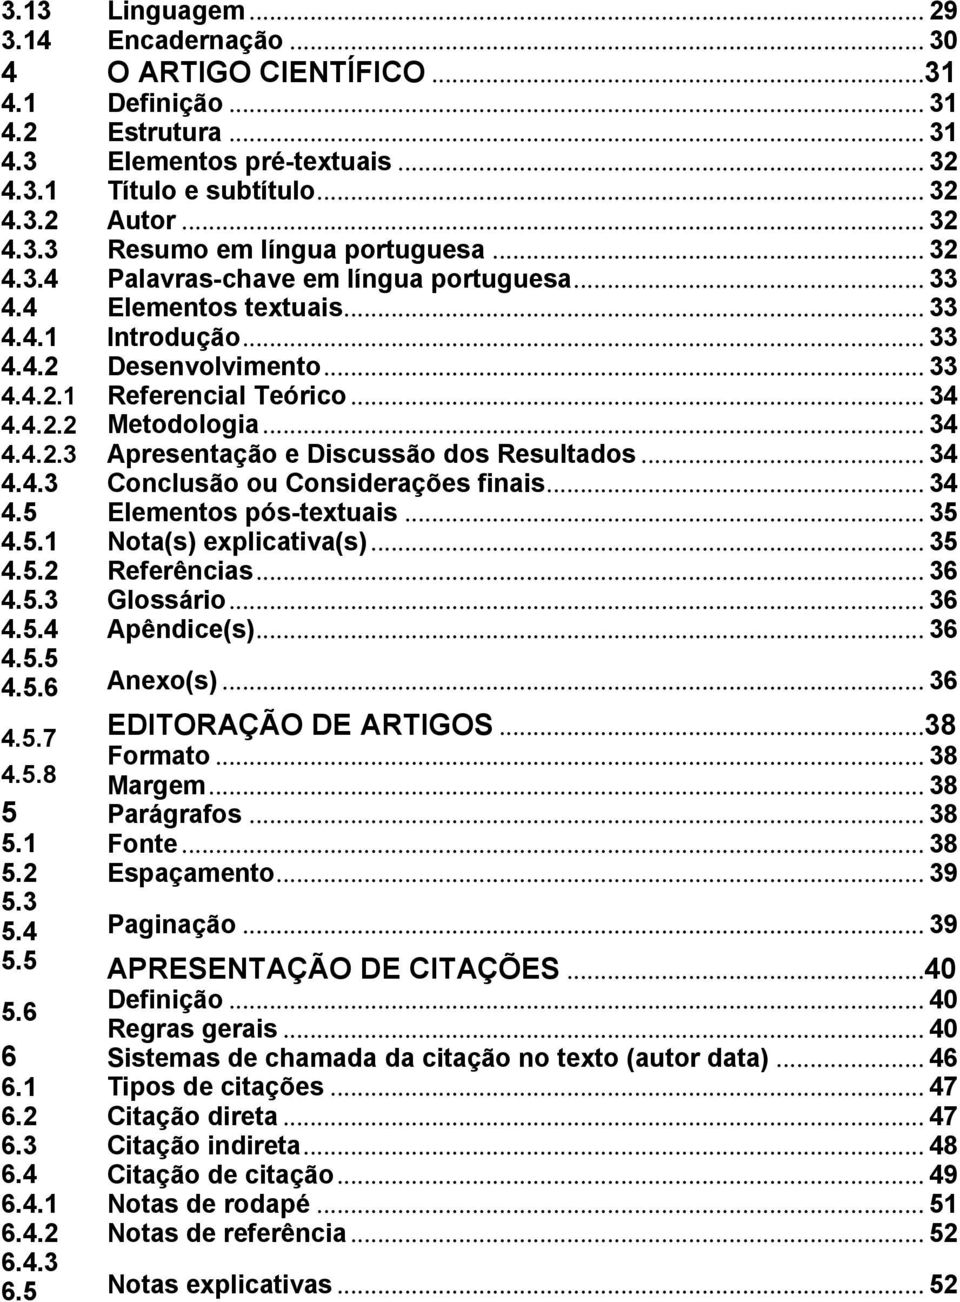 .. 32 Palavras-chave em língua portuguesa... 33 Elementos textuais... 33 Introdução... 33 Desenvolvimento... 33 Referencial Teórico... 34 Metodologia... 34 Apresentação e Discussão dos Resultados.